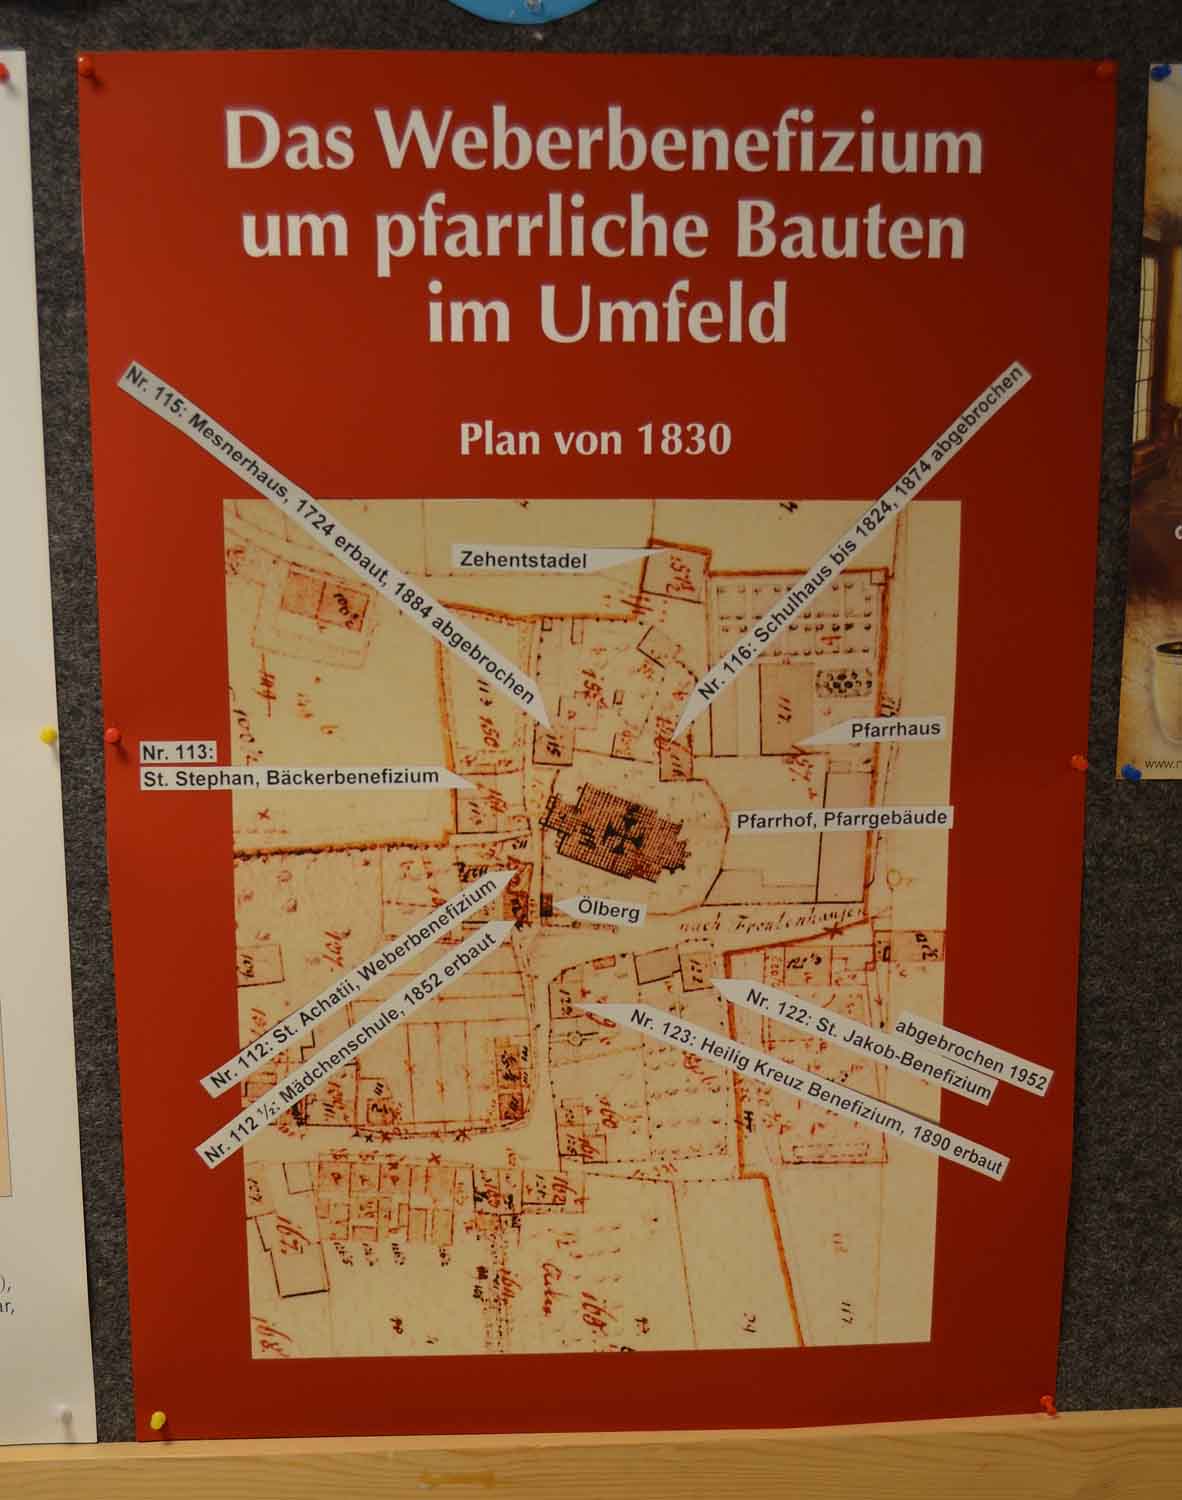 Dieser Plan zeigt die historische Situation rund um die Pfarrkiche um das Jahr 1830